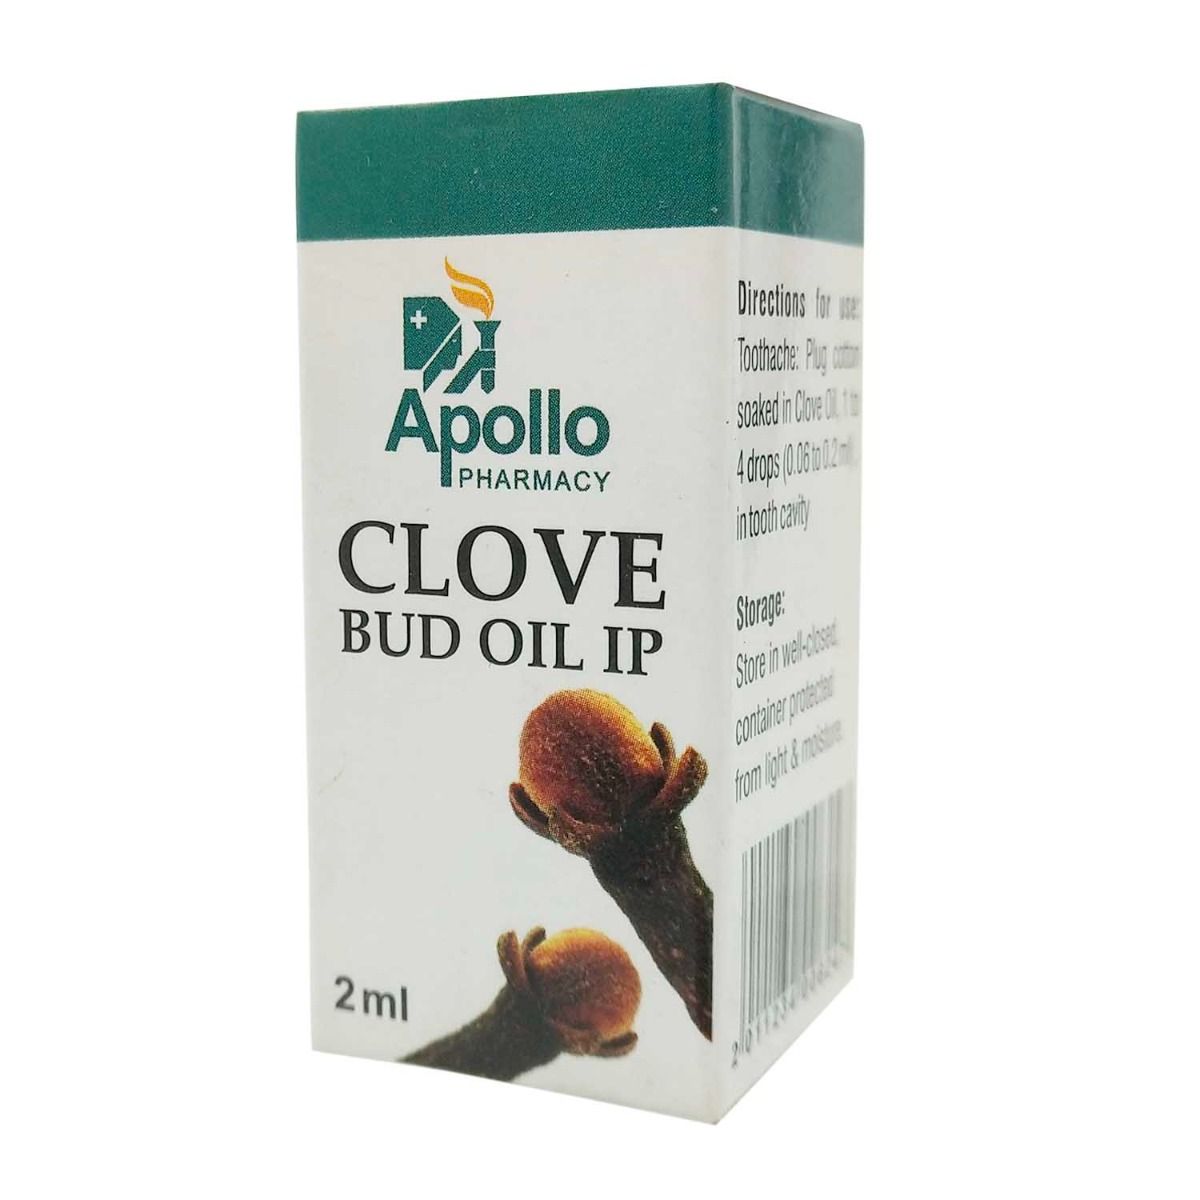 Apollo Pharmacy Clove Oil I.P., 2 gm, Pack of 1 